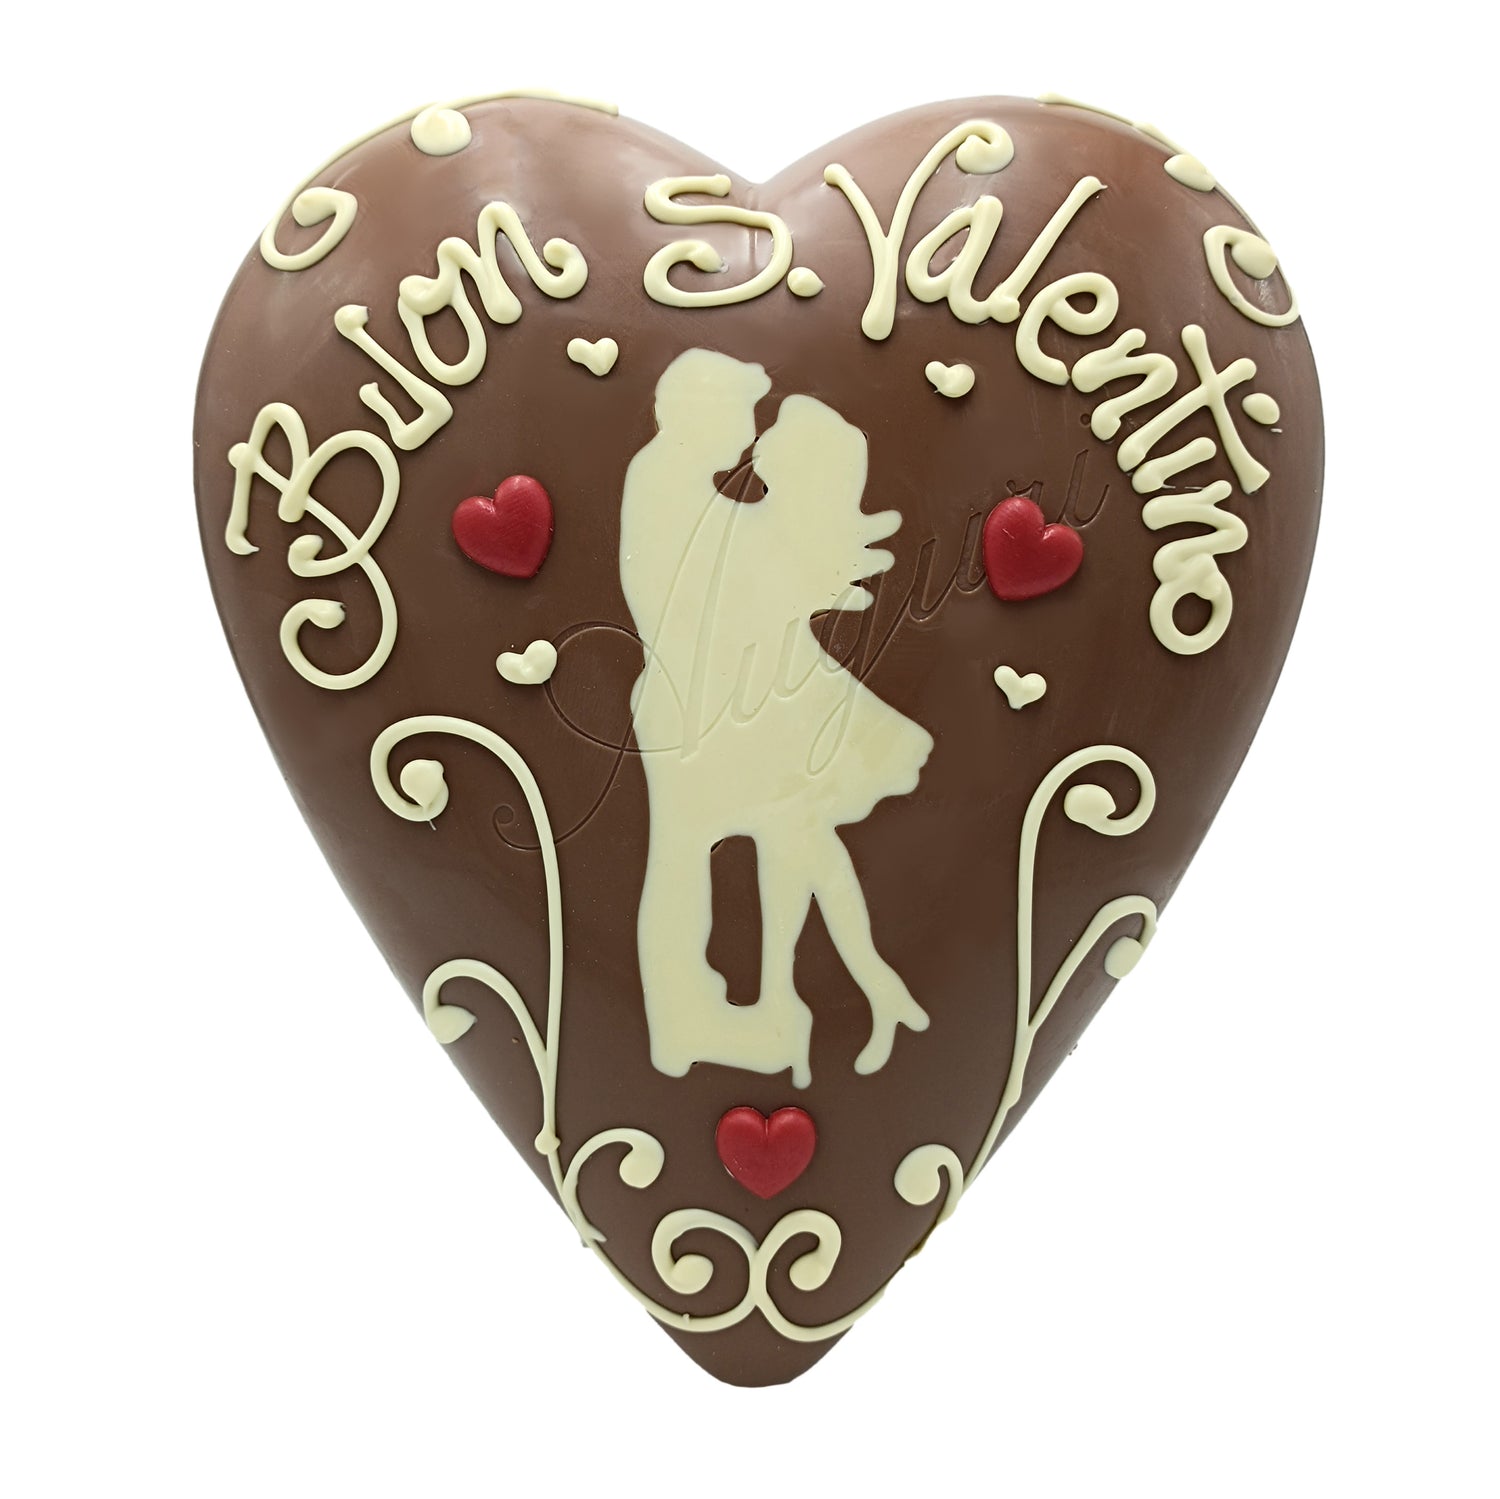 Cuore San Valentino Cioccolato Innamorati Maxi – Ciocobon